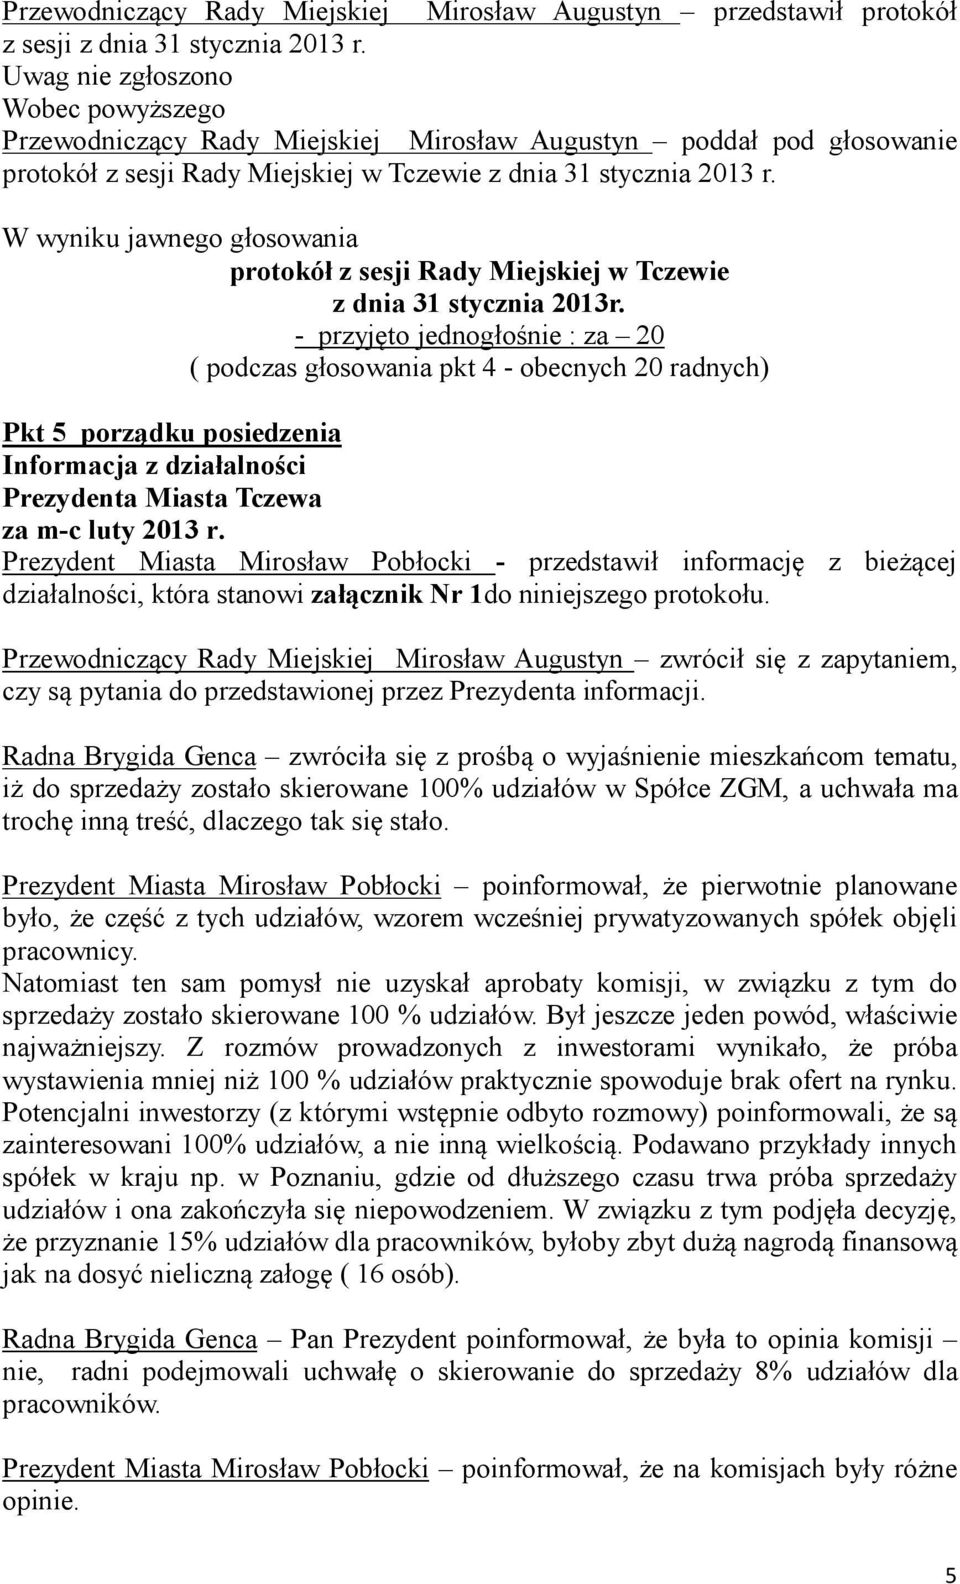 W wyniku jawnego głosowania protokół z sesji Rady Miejskiej w Tczewie z dnia 31 stycznia 2013r.